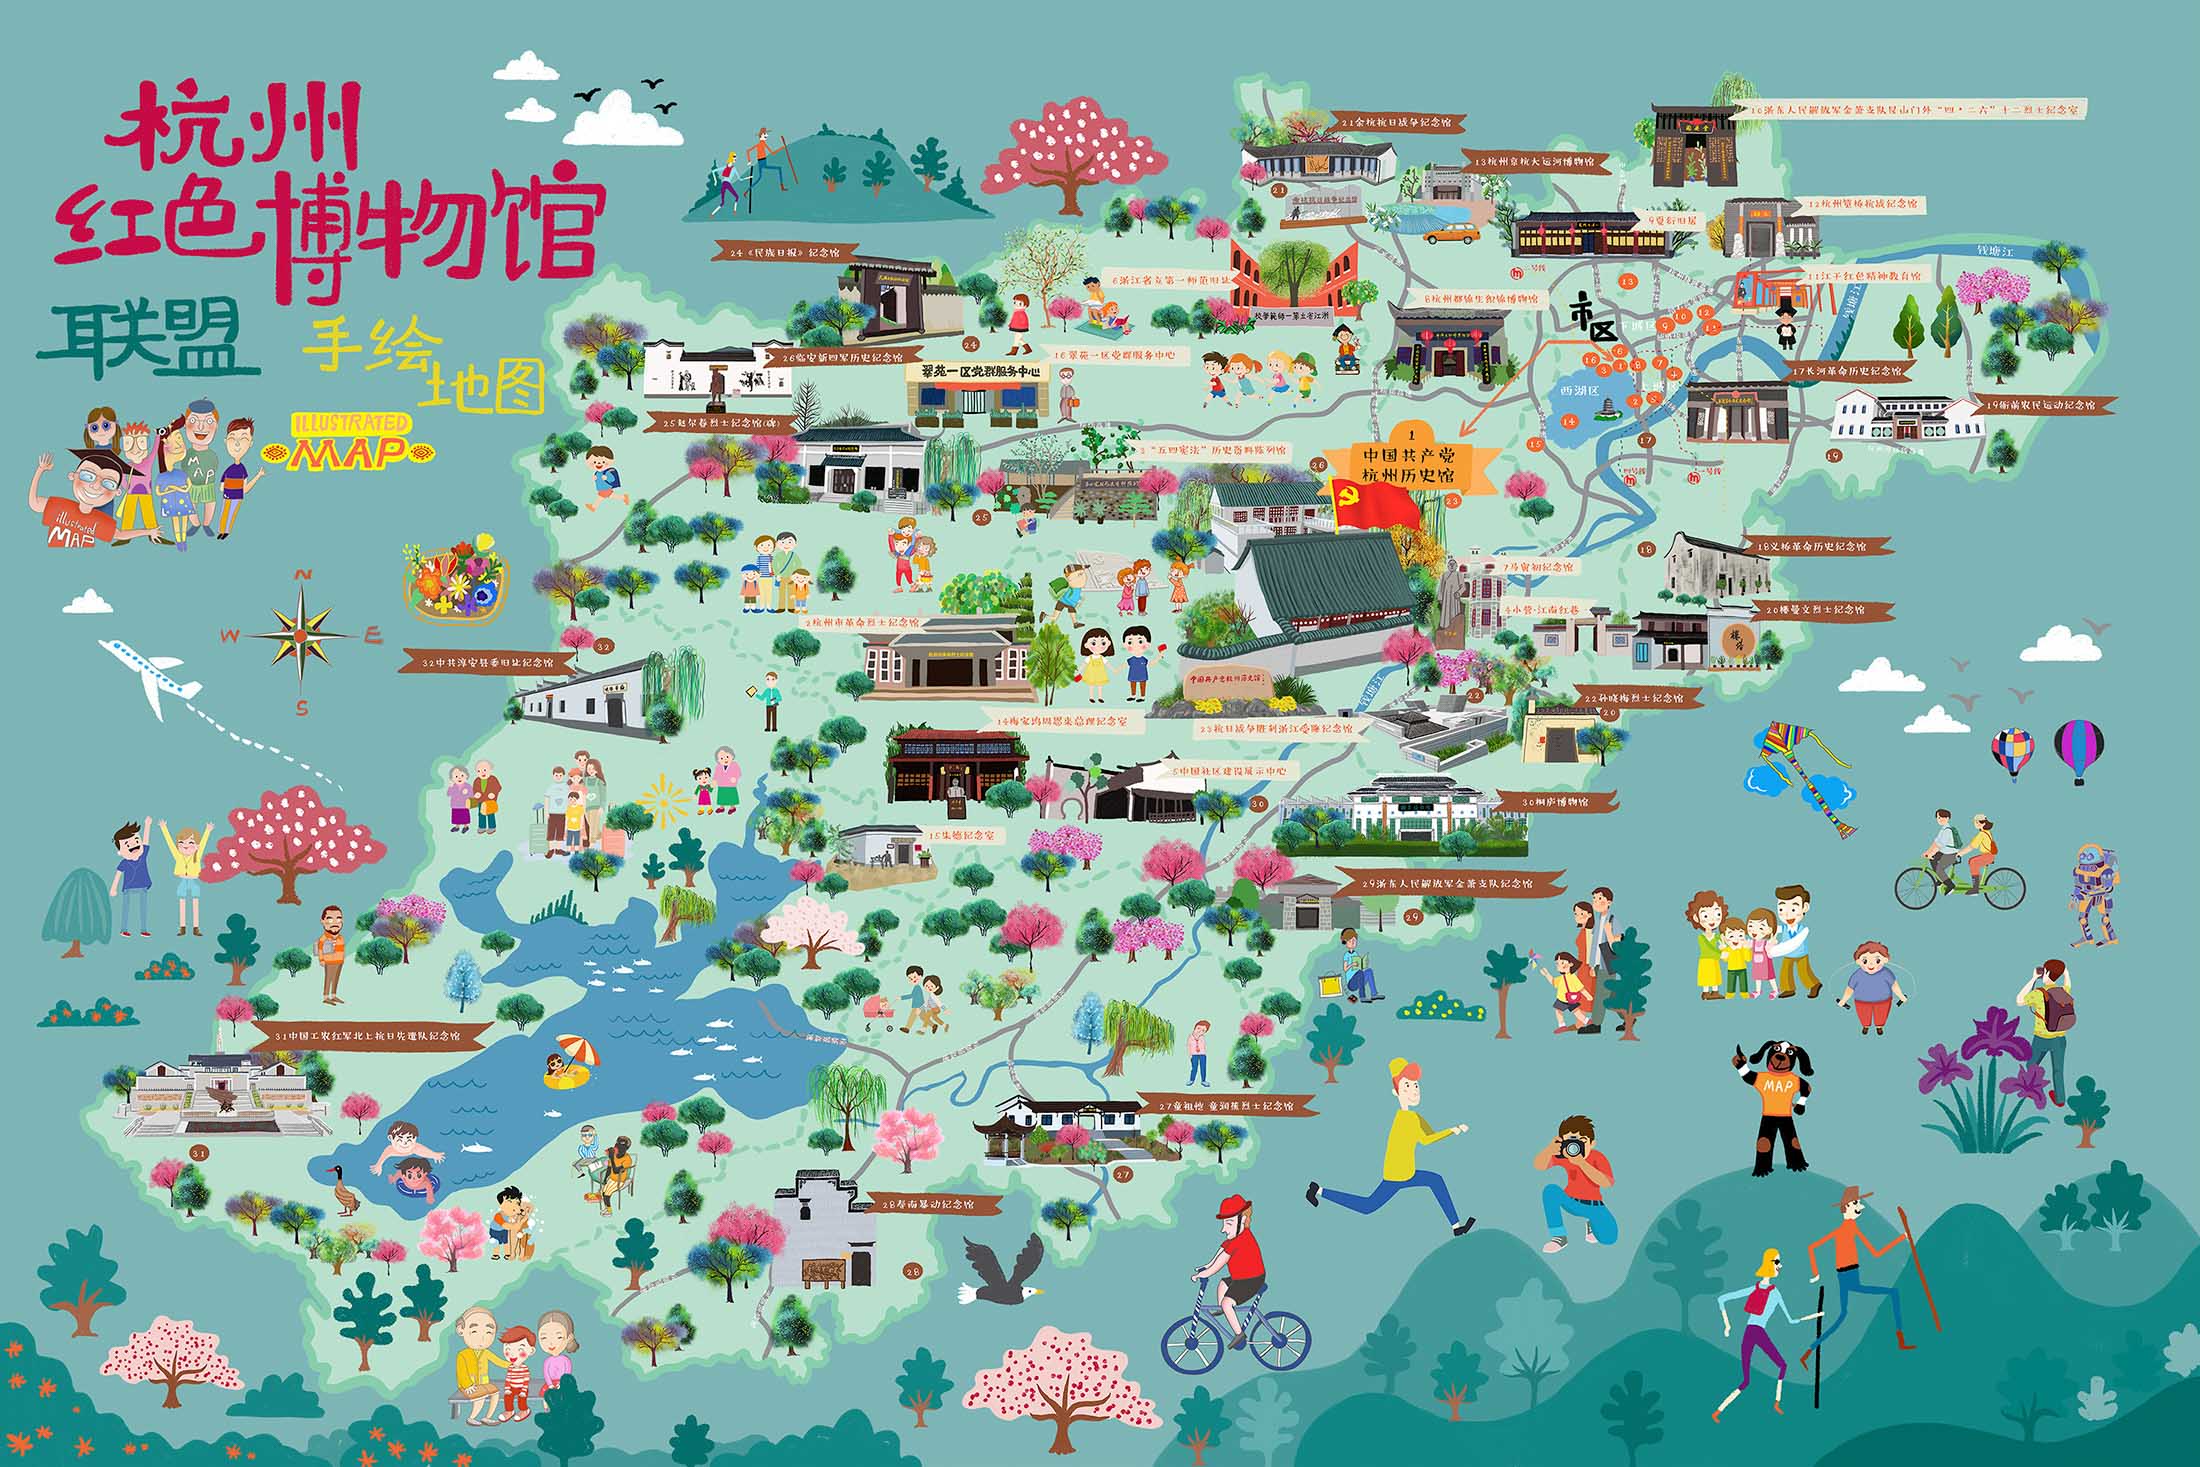 平川手绘地图与科技的完美结合 